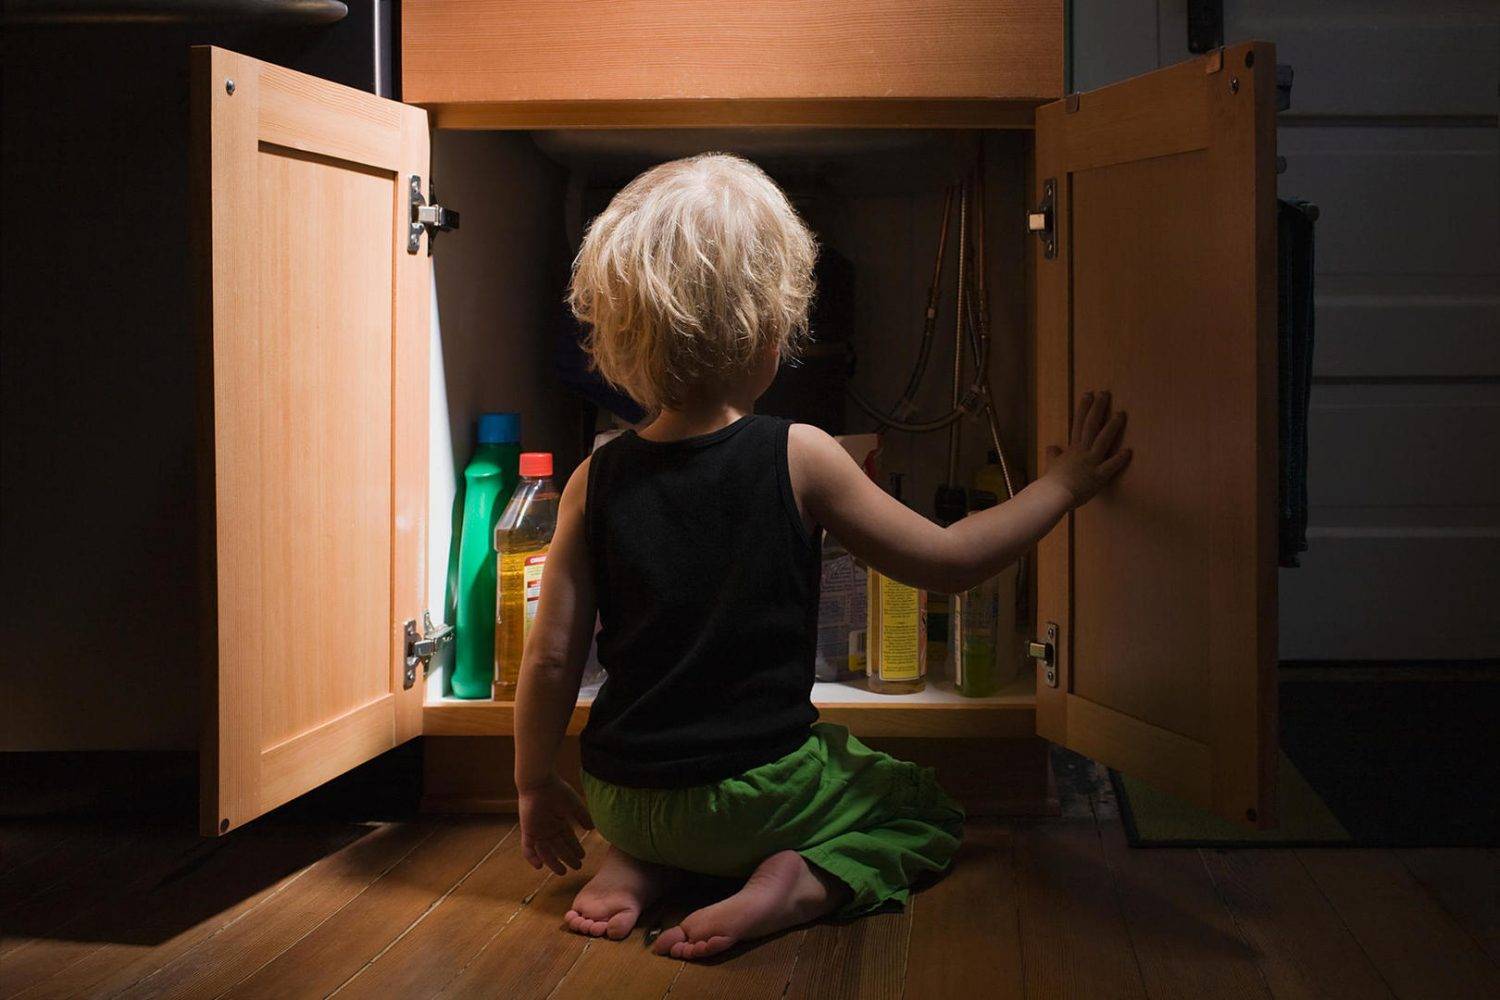 Безопасное поведение ребенка дома, в квартире и в подъезде